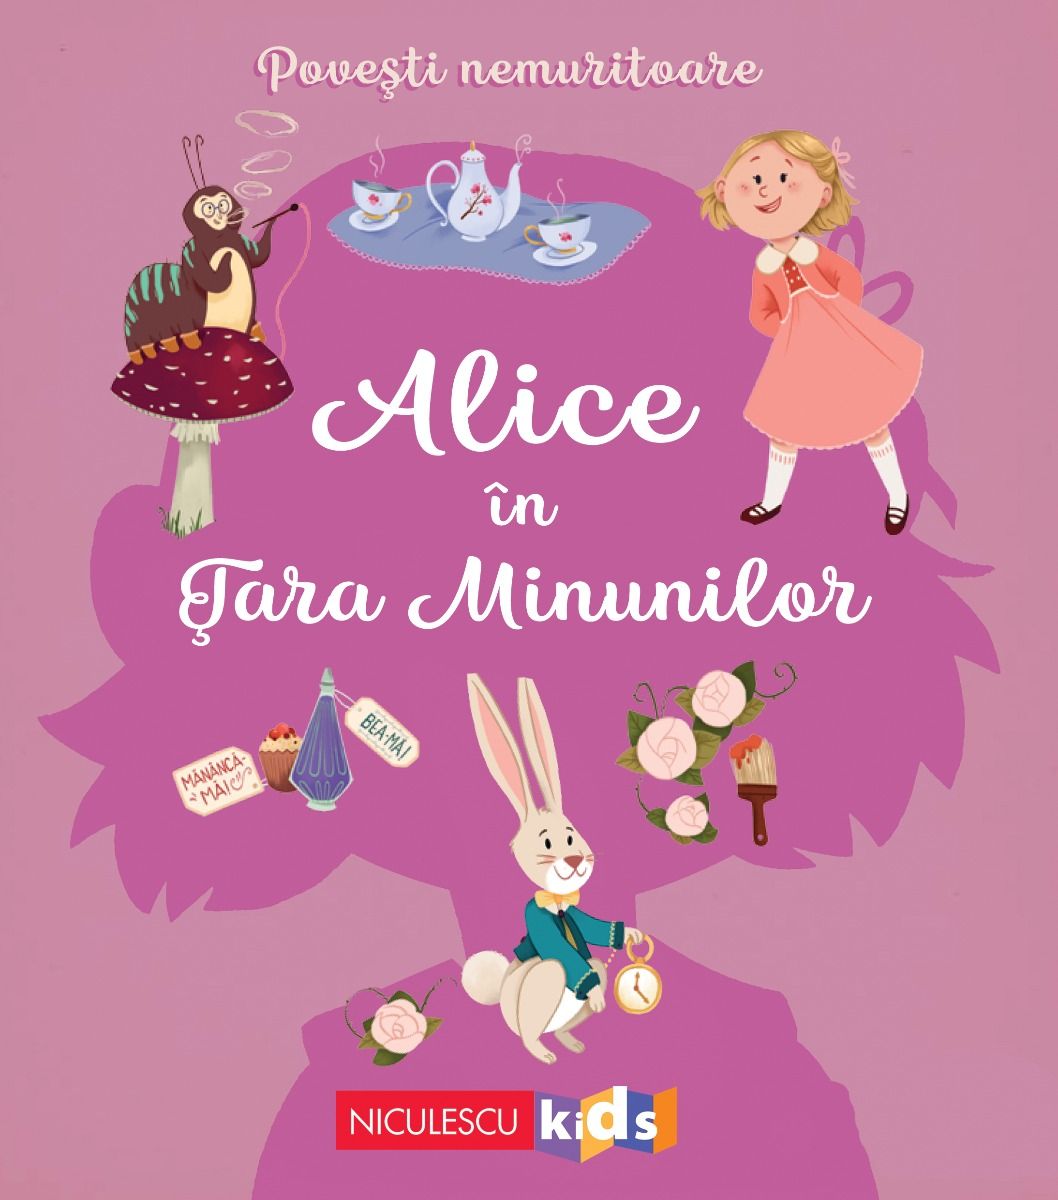 Povesti nemuritoare: Alice in tara minunilor